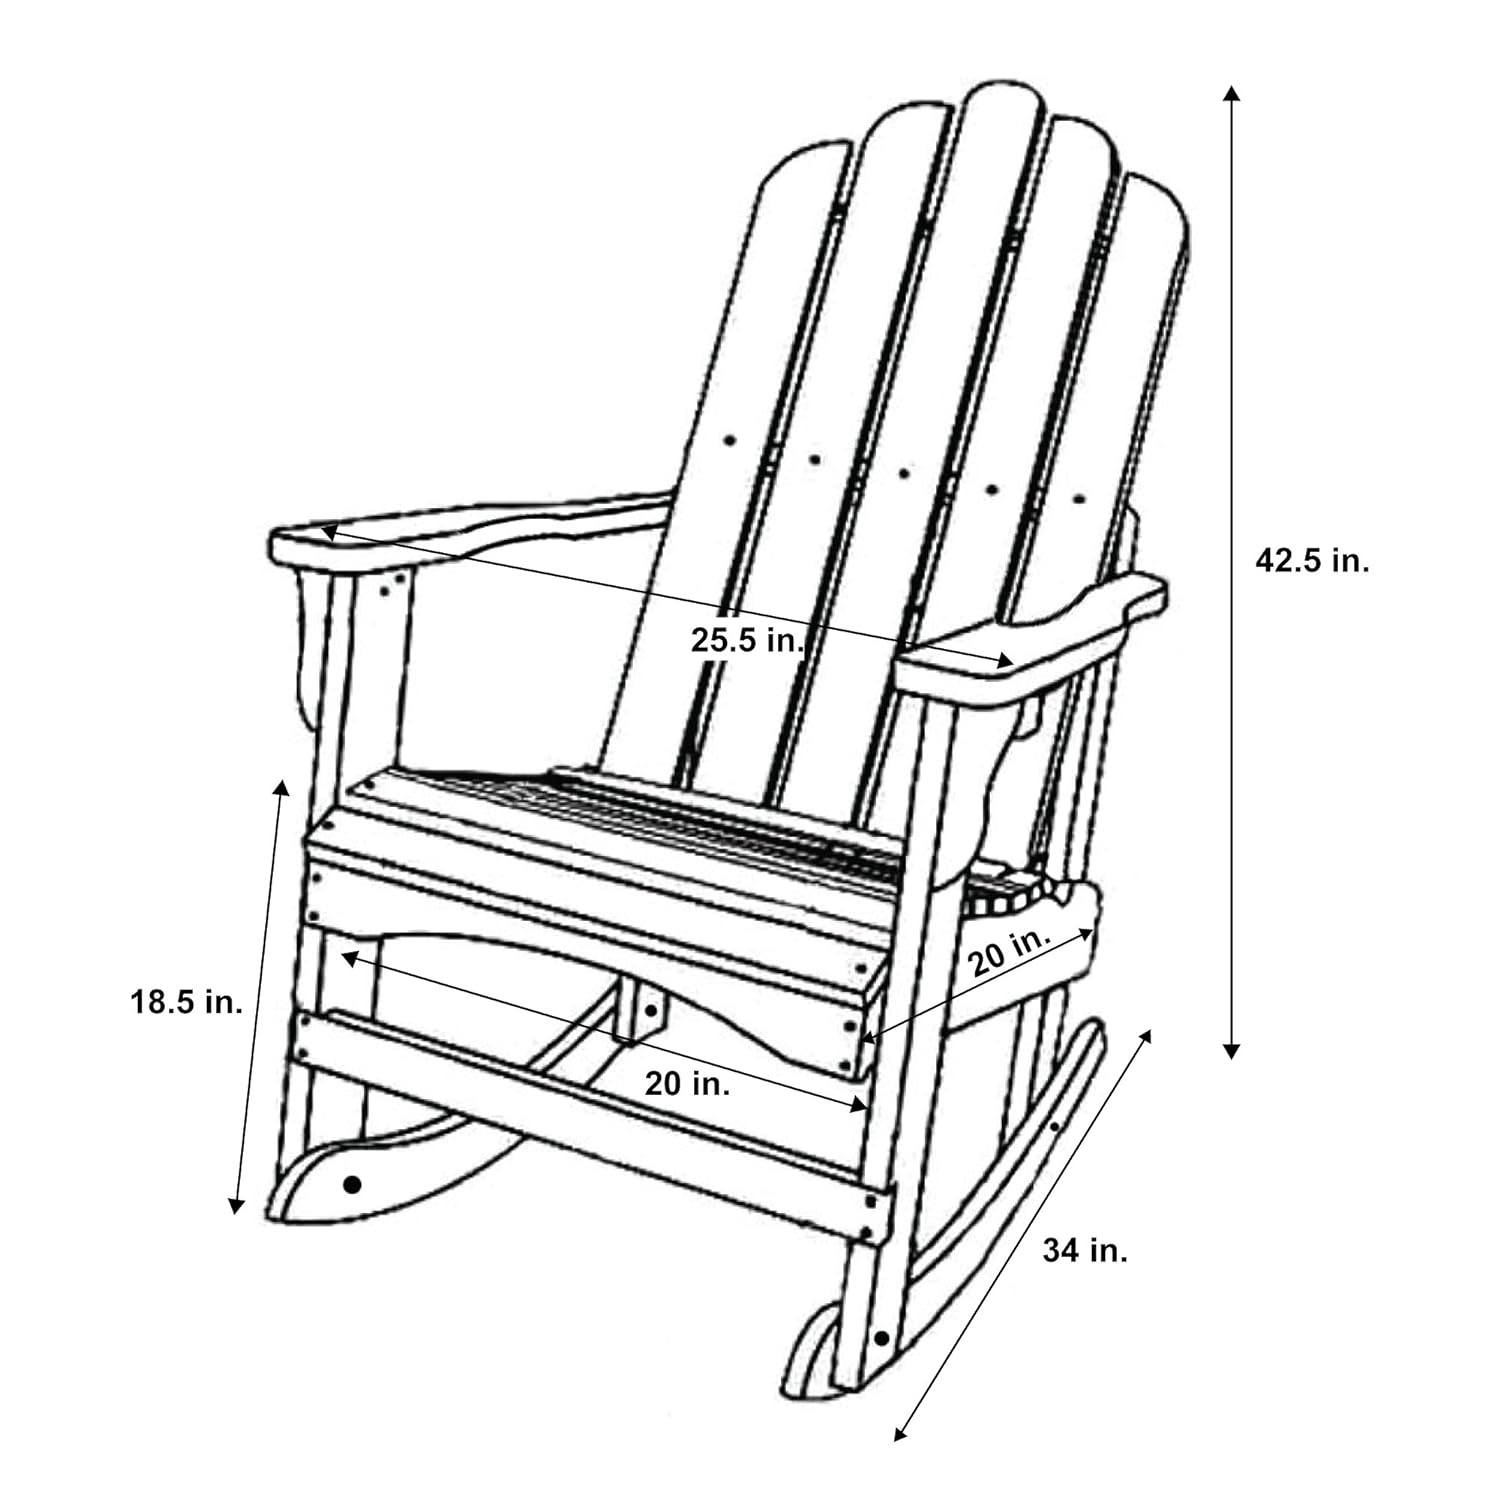 Кресло качалка своими руками из дерева чертежи и размеры и фото